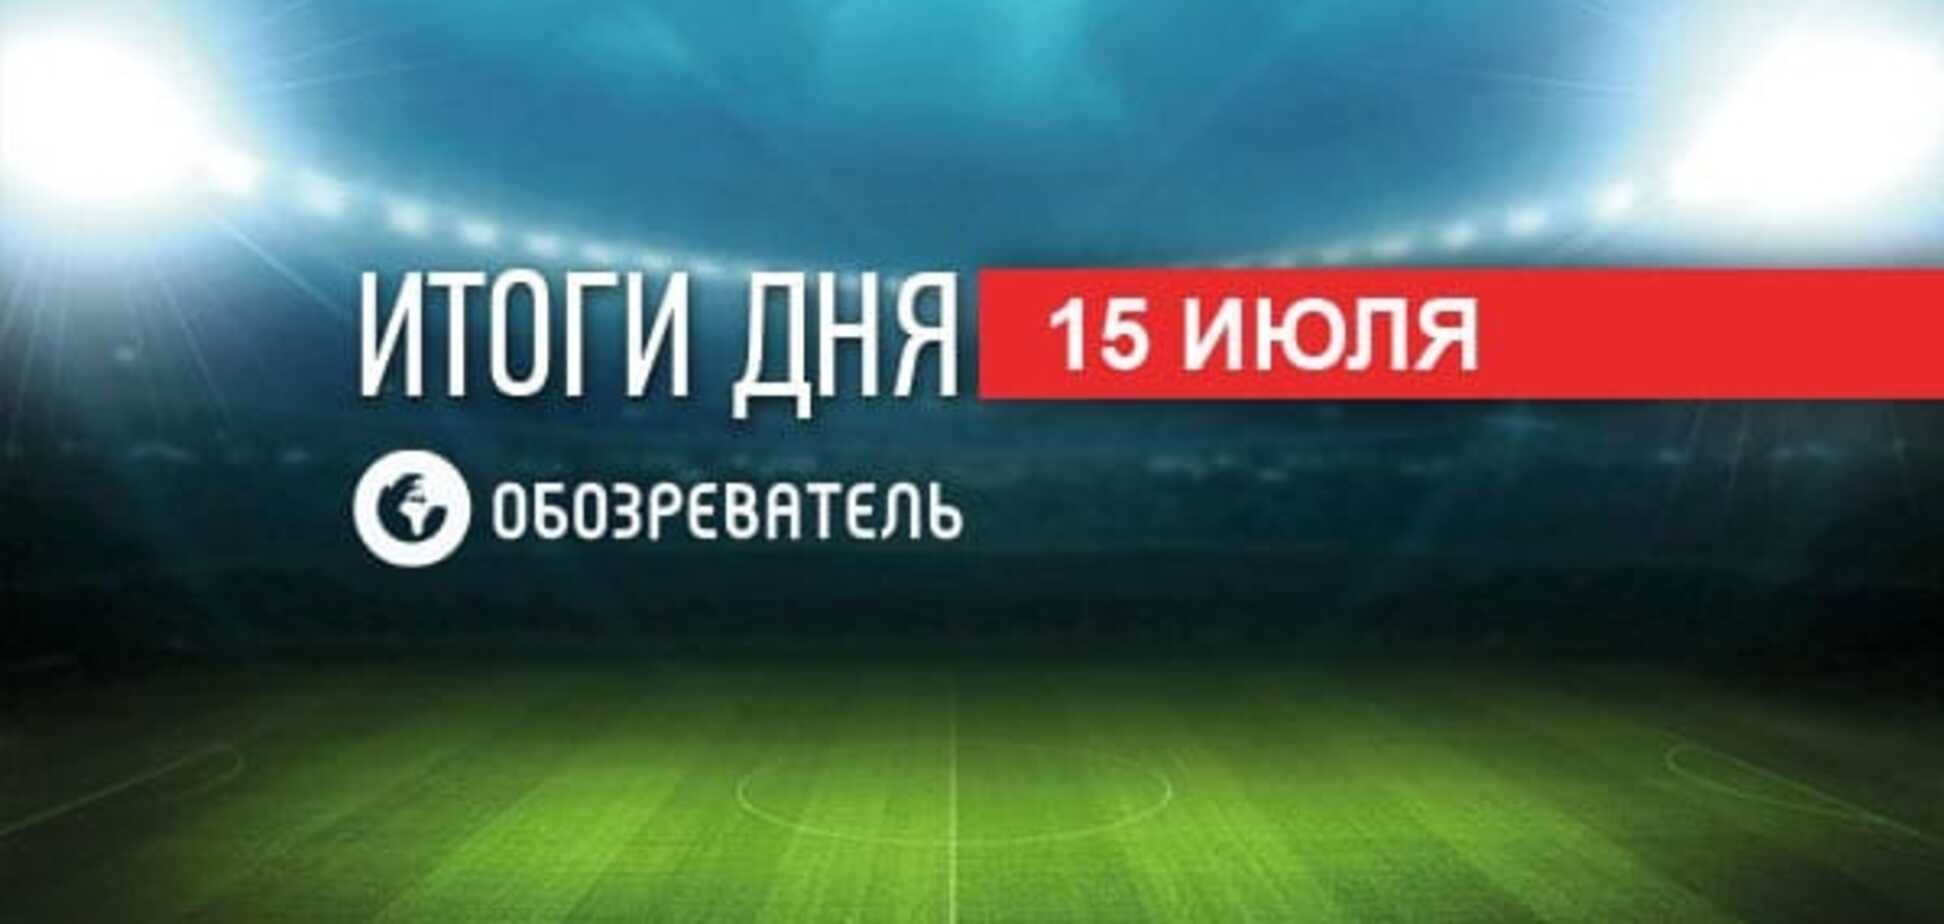 Українські футбольні клуби дізналися суперників у Лізі чемпіонів і Лізі Європи. Спортивні підсумки 15 липня